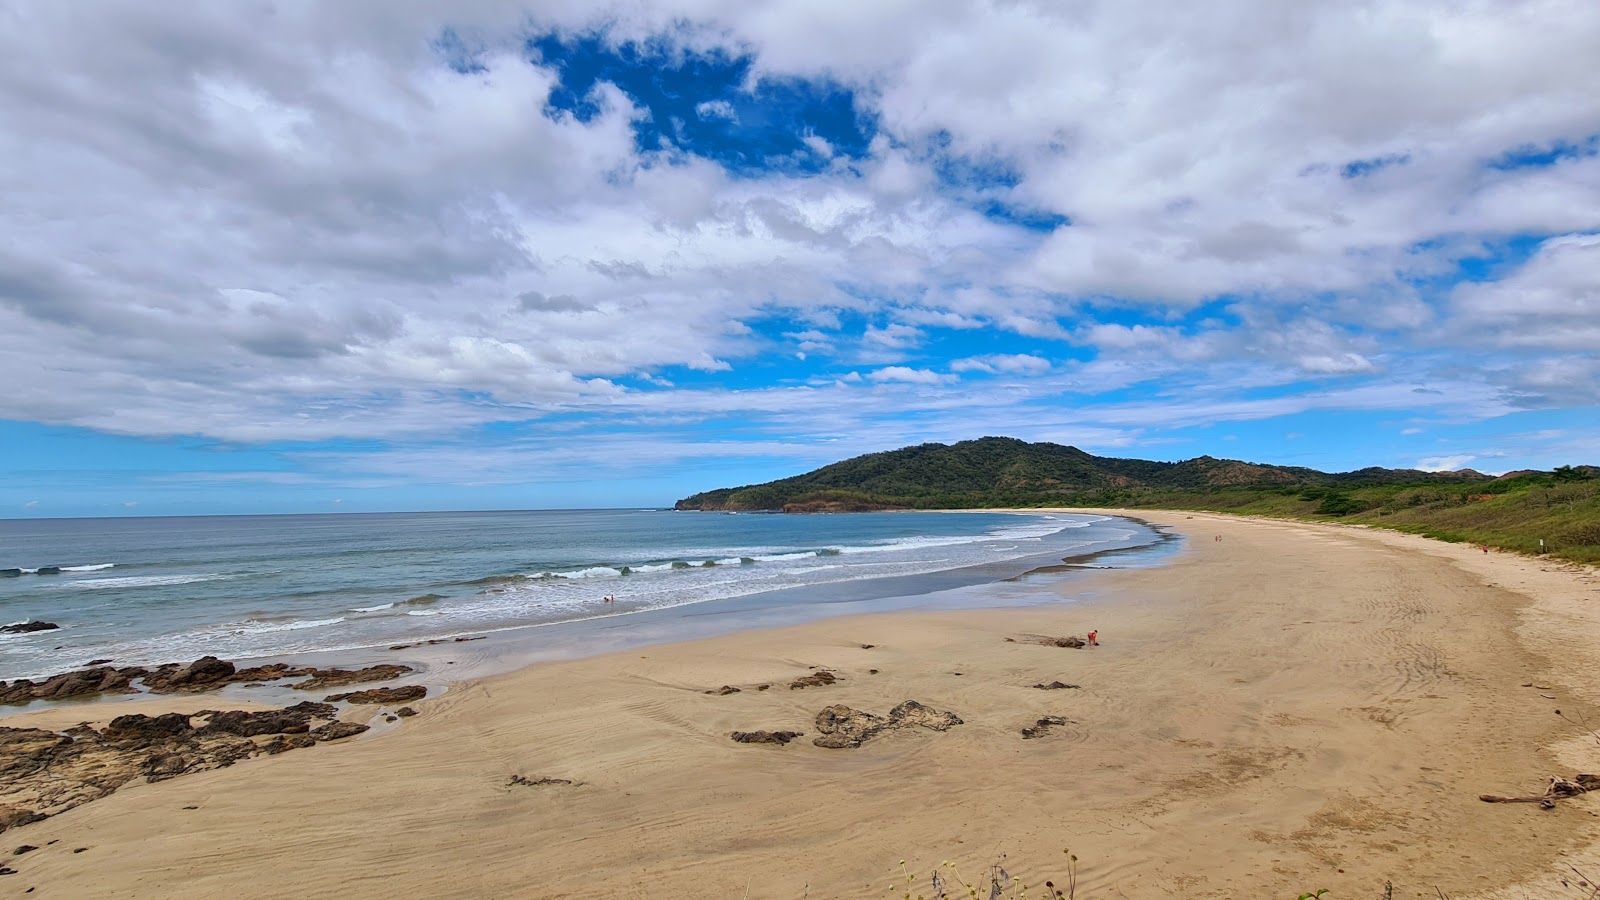 Zdjęcie Playa Ventanas z powierzchnią jasny piasek